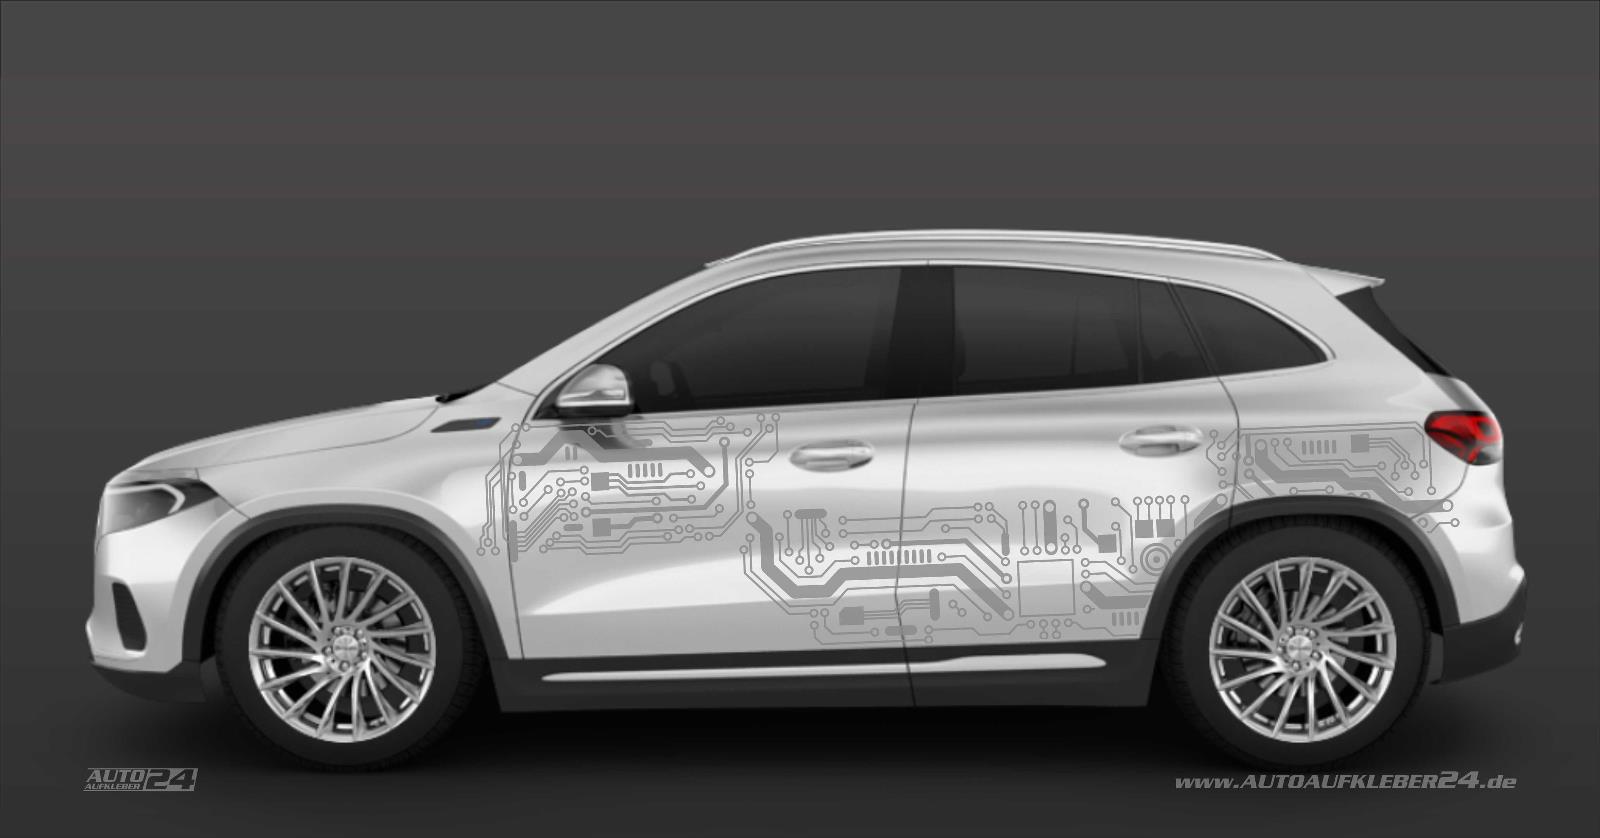 Autoaufkleber 24 - Dein Shop für ausgefallene Elektro Auto Aufkleber und Design Folien - Folierung Mercedes EQA folieren